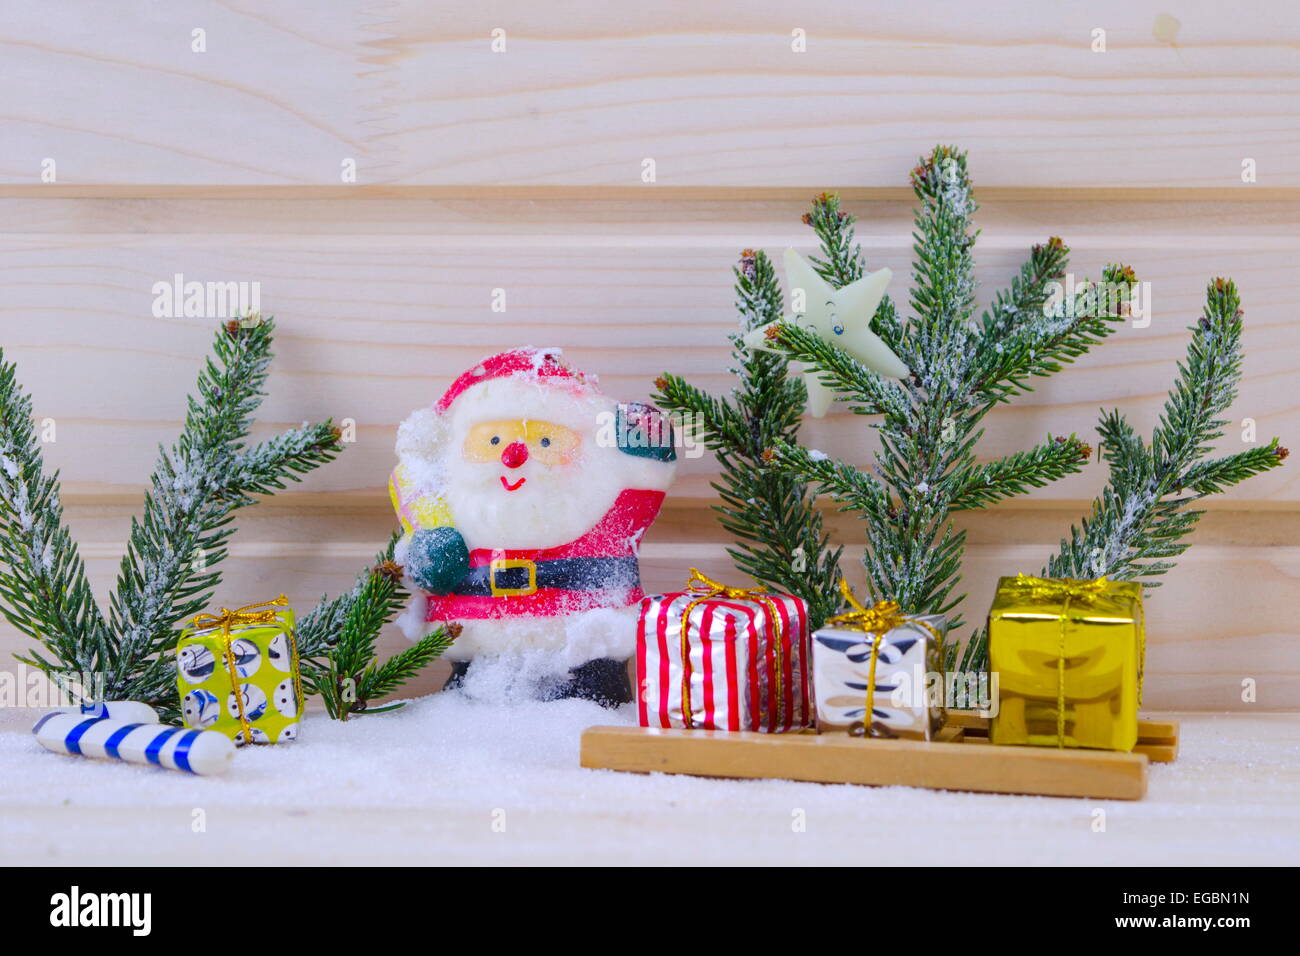 Toy Santa entre sapins et présente sur une surface en bois enneigé Banque D'Images